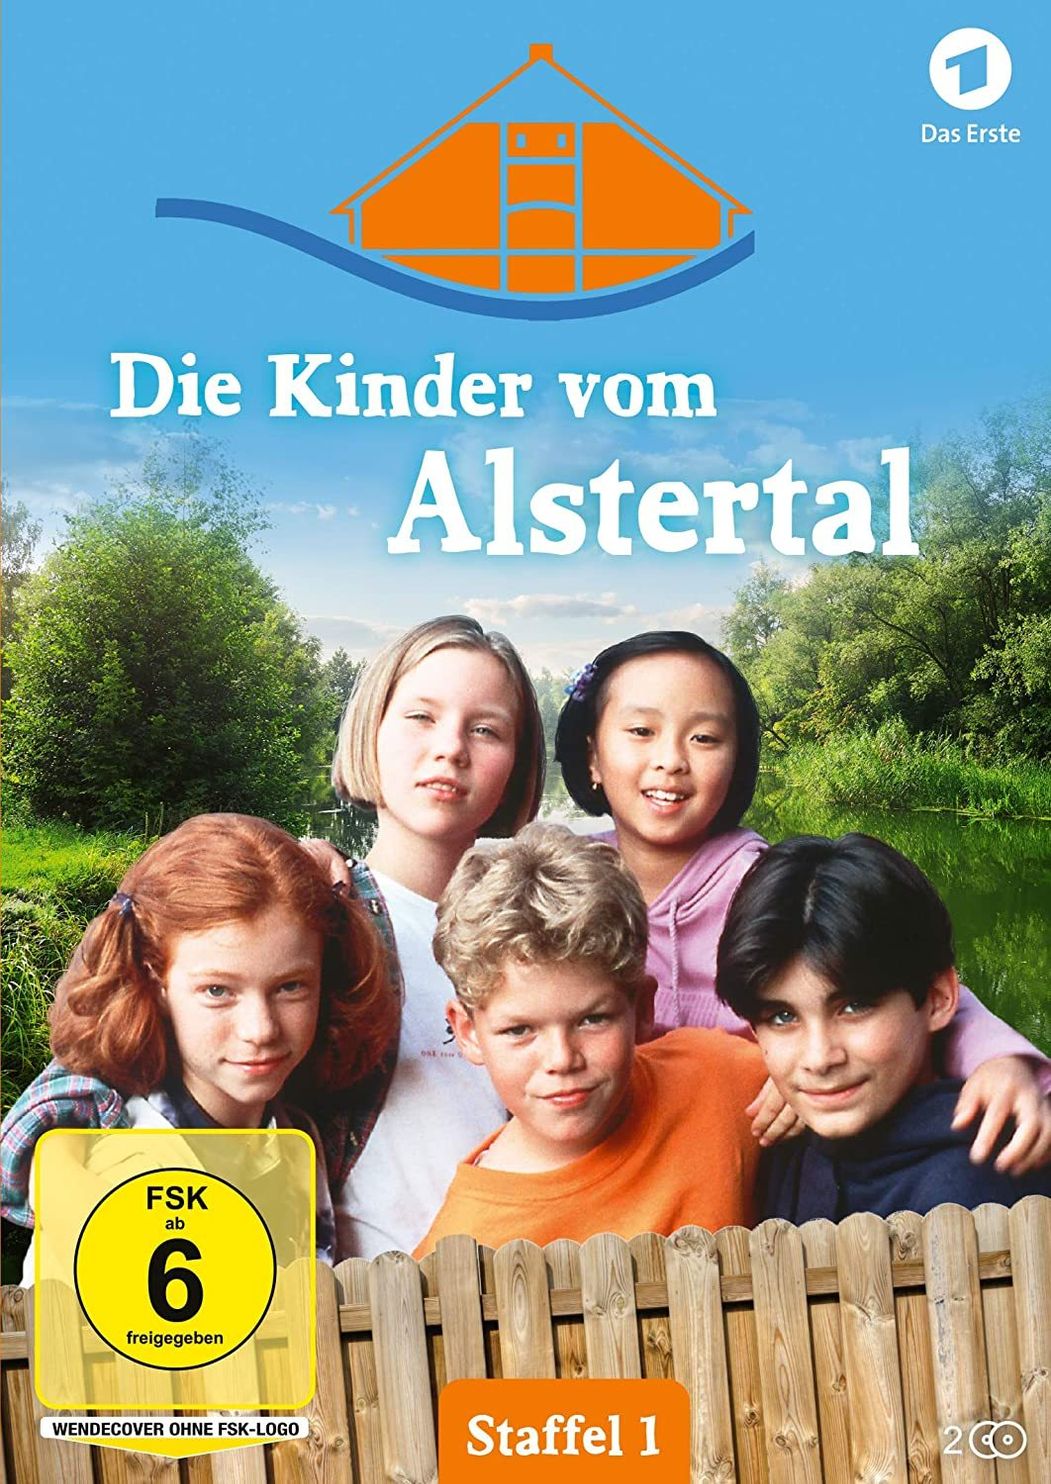 Die Kinder vom Alstertal - Staffel 1 DVD | Weltbild.ch